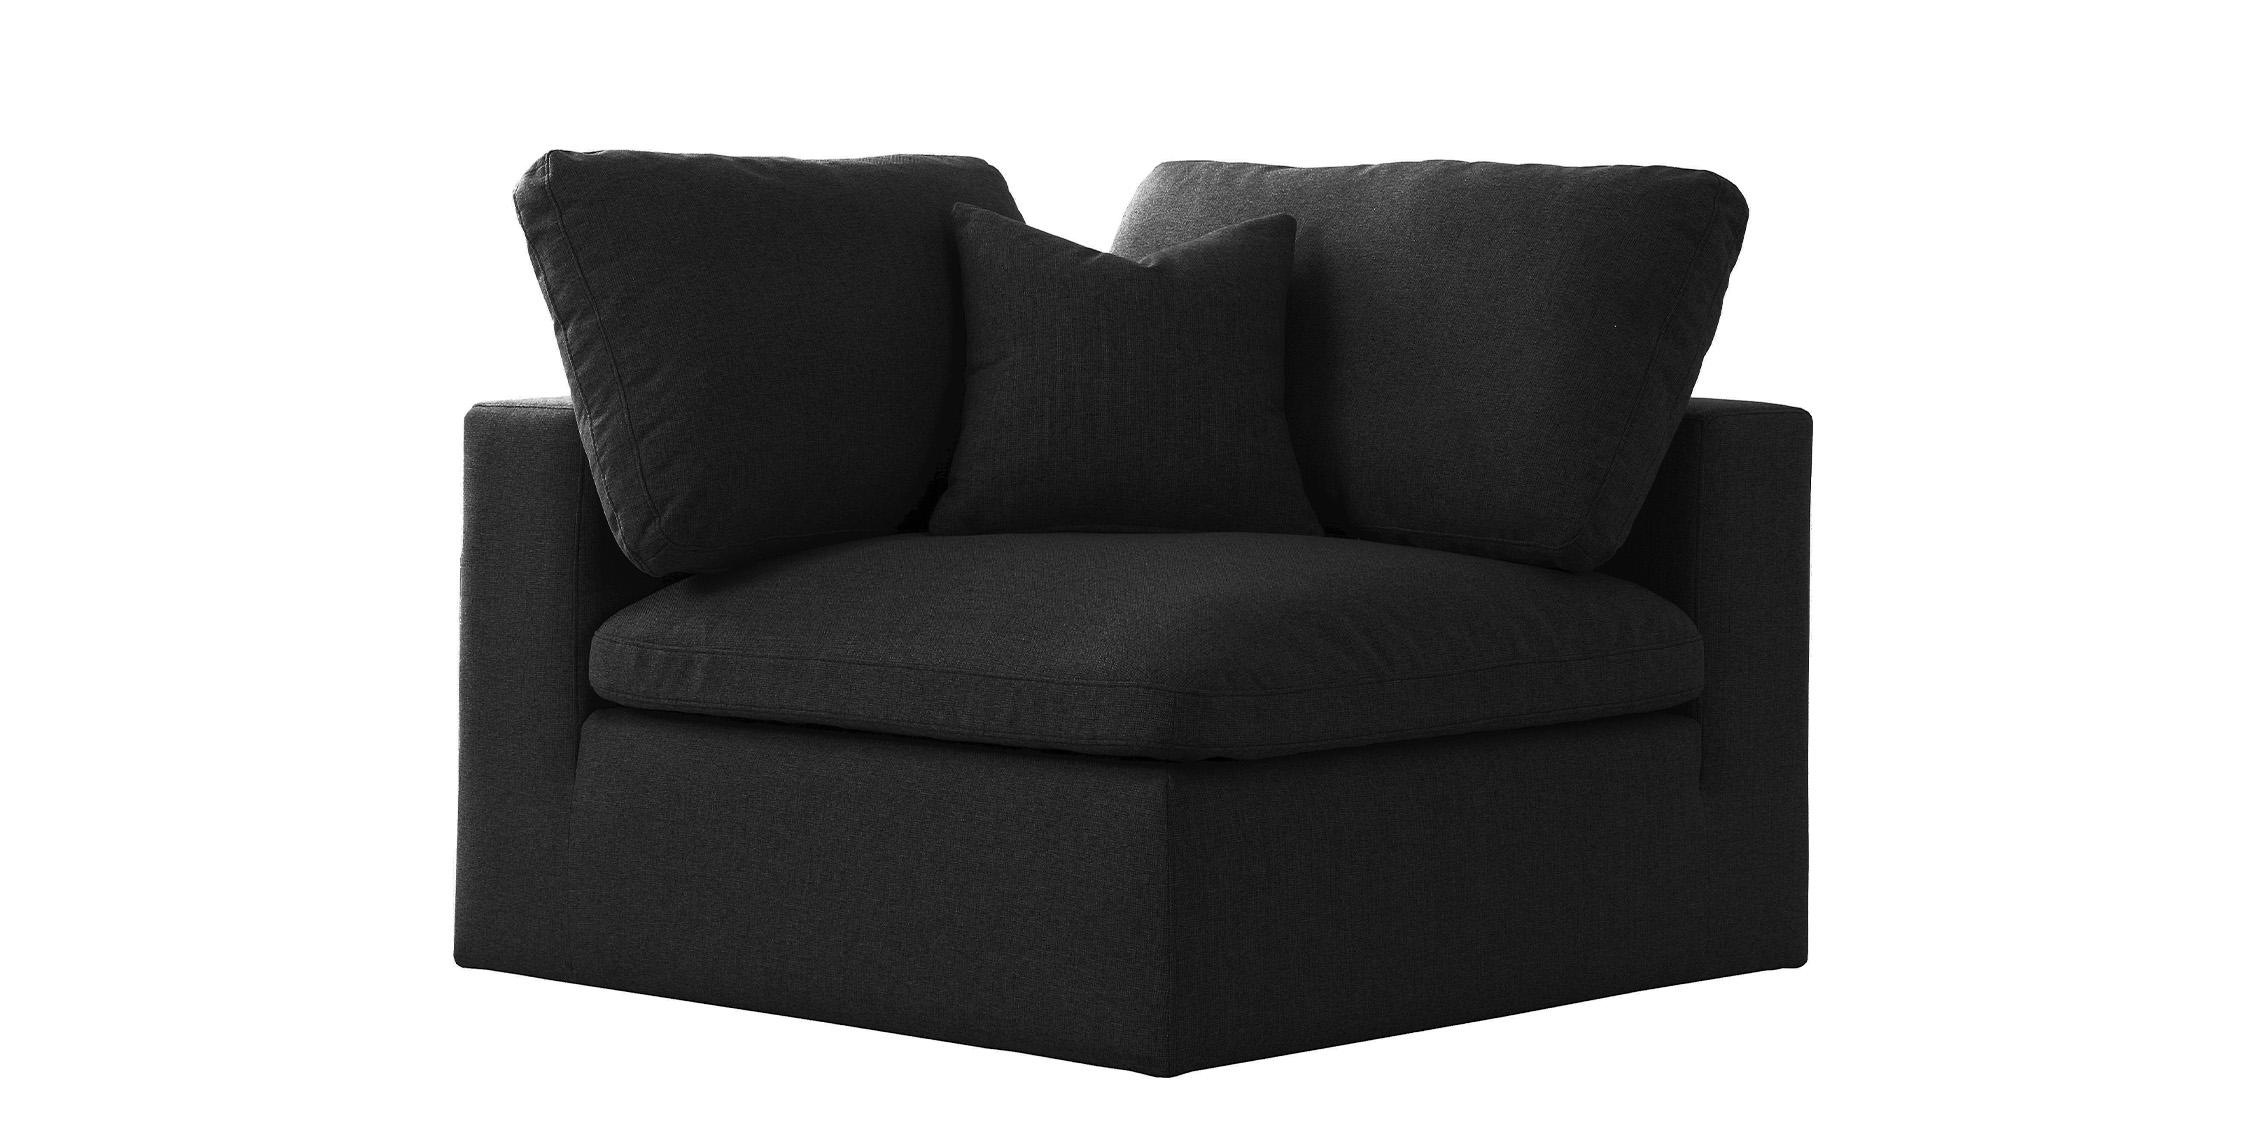 

    
Serene Black Linen Textured Fabric Deluxe Comfort Corner Chair
